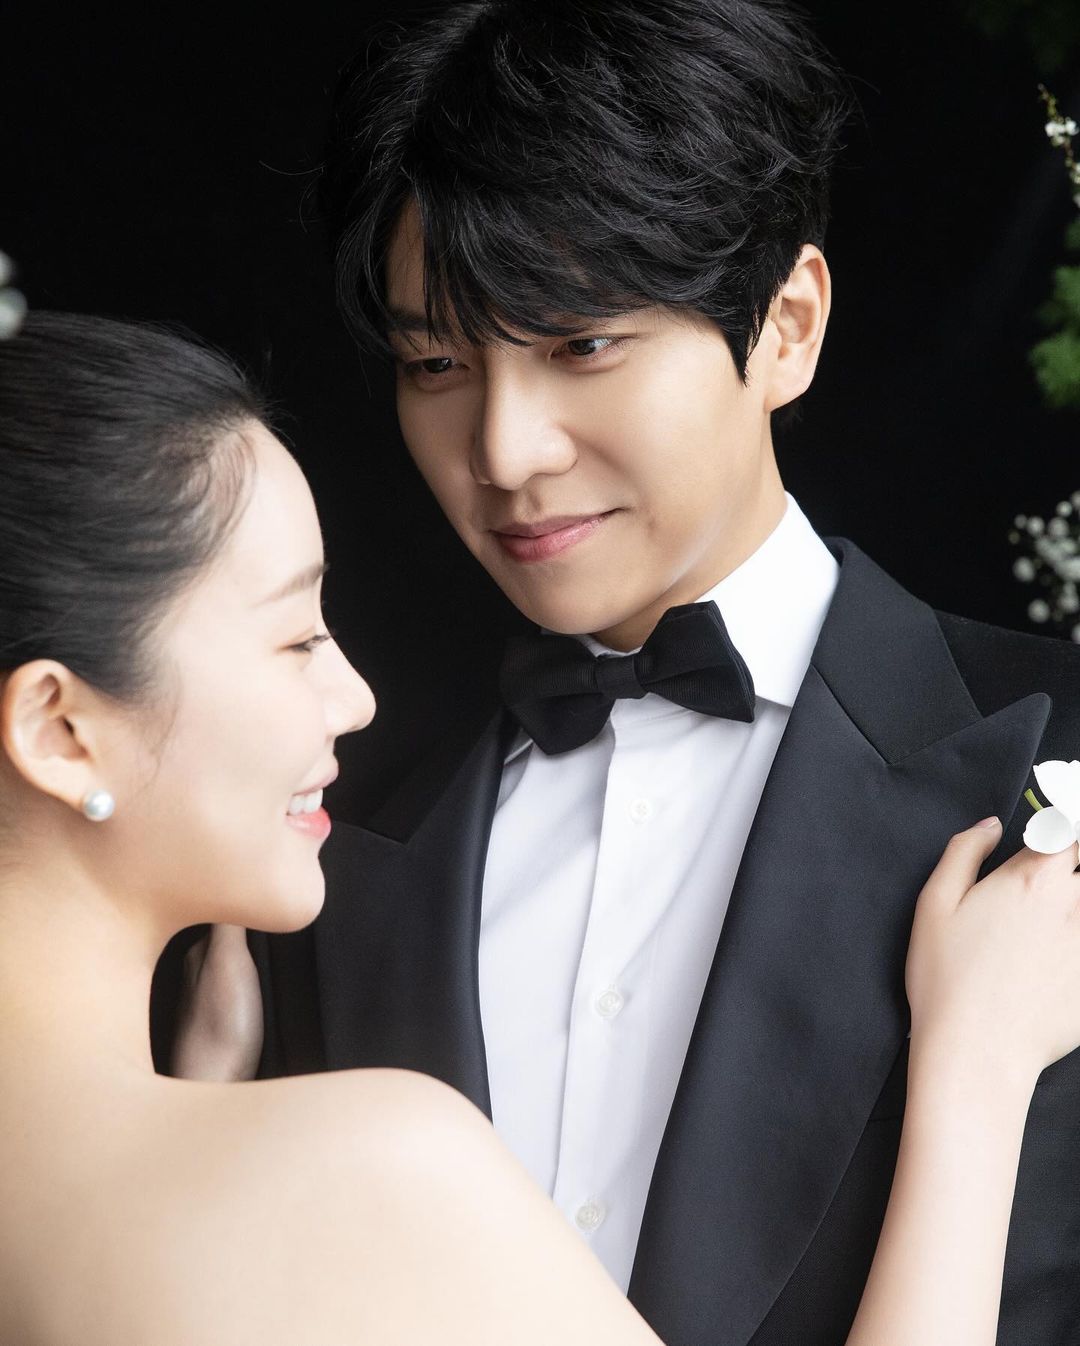 Ли Сын Ги и Ли Да Ин поделились красивыми фото в честь первой годовщины свадьбы